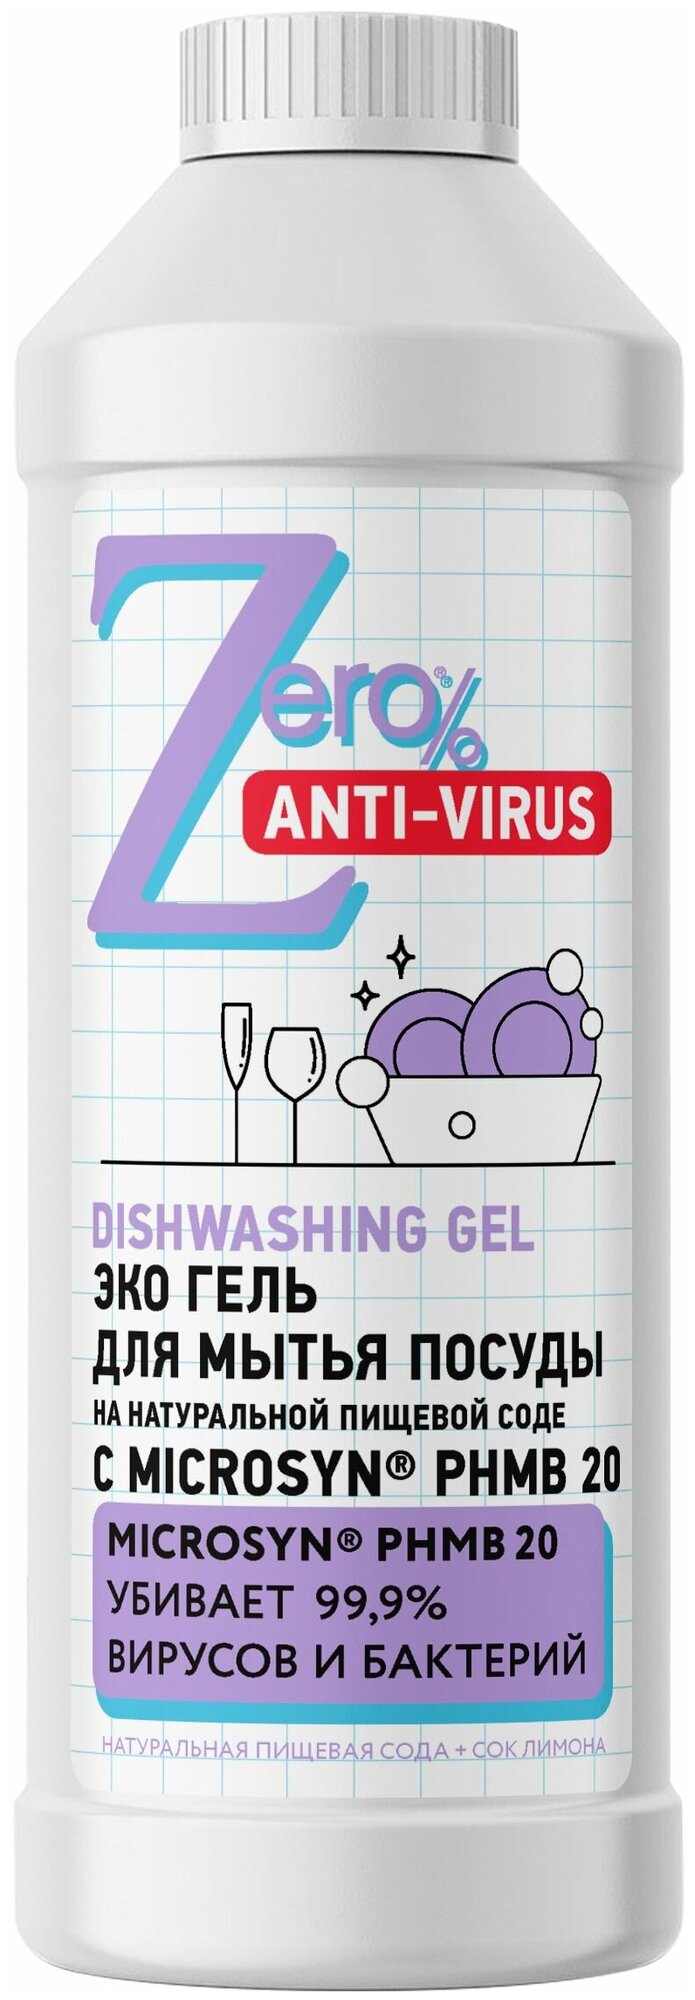 ZERO Гель для мытья посуды, пищевая сода, "Антивирус", 500 мл, Zero